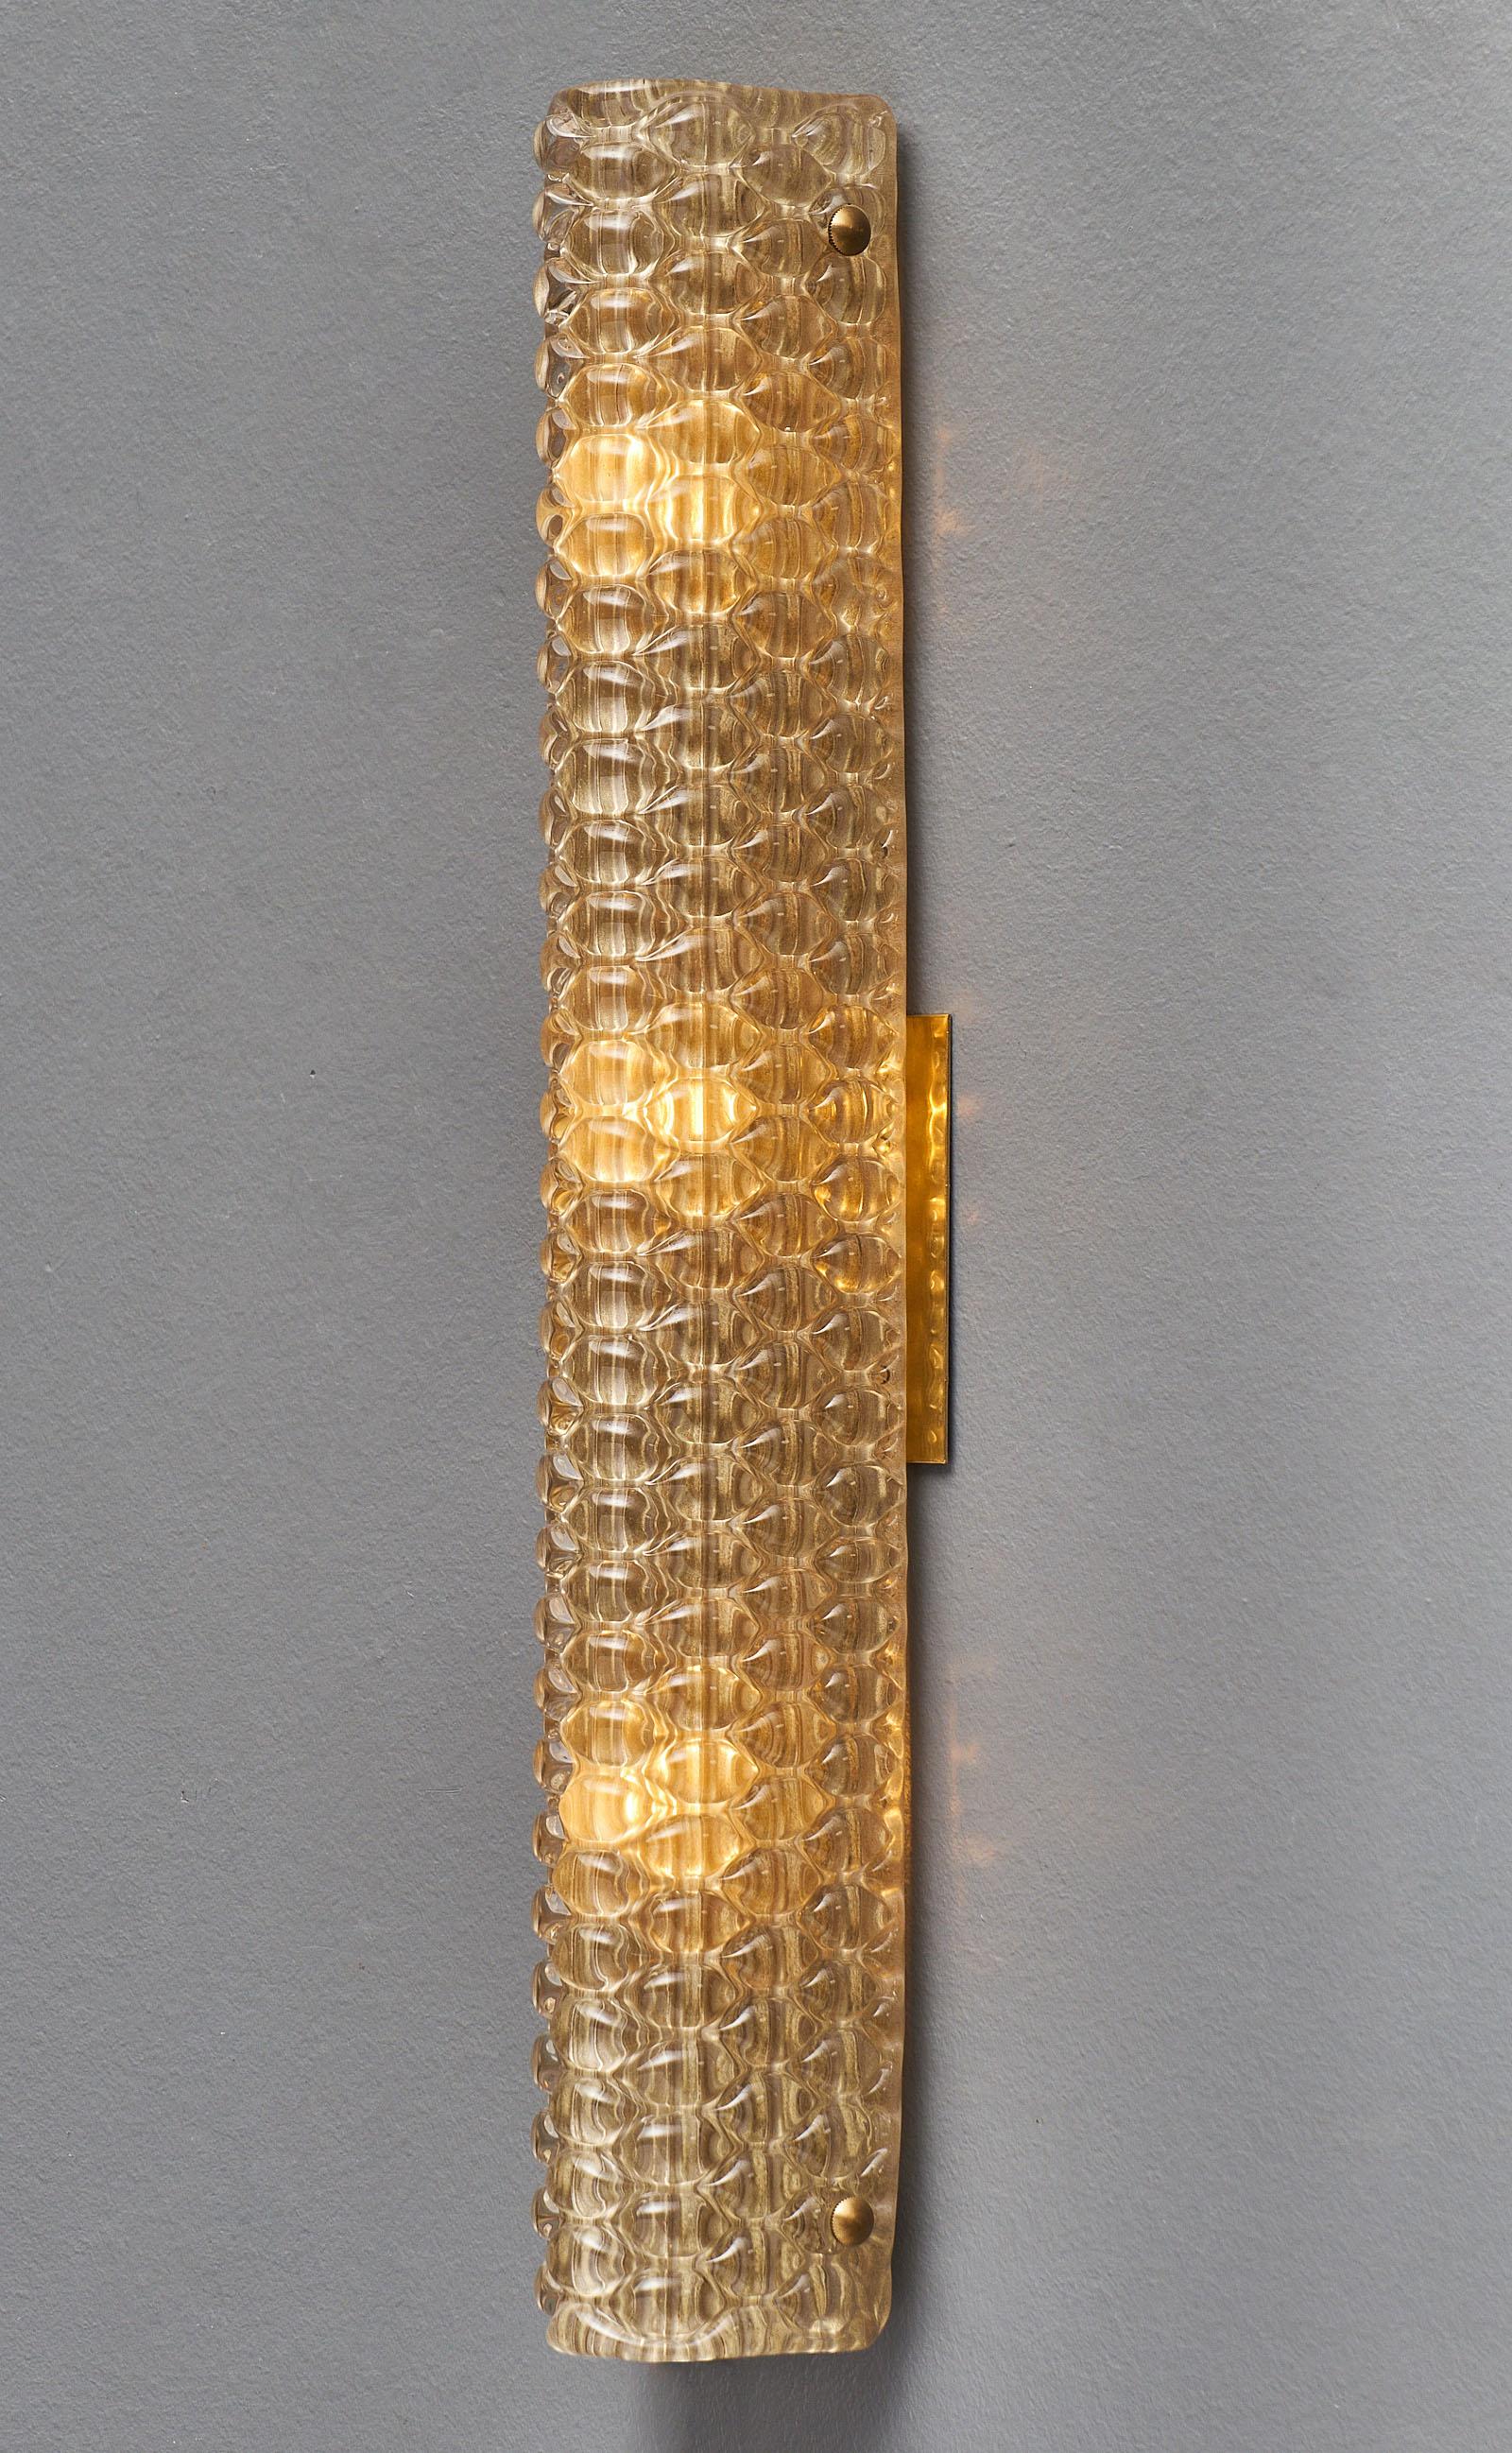 Appliques modernistes en verre de Murano, texturées avec un motif de type peau de python sur le verre soufflé à la main. Nous adorons le style épuré de cette paire. Ils ont été nouvellement câblés pour répondre aux normes américaines.

Cette paire